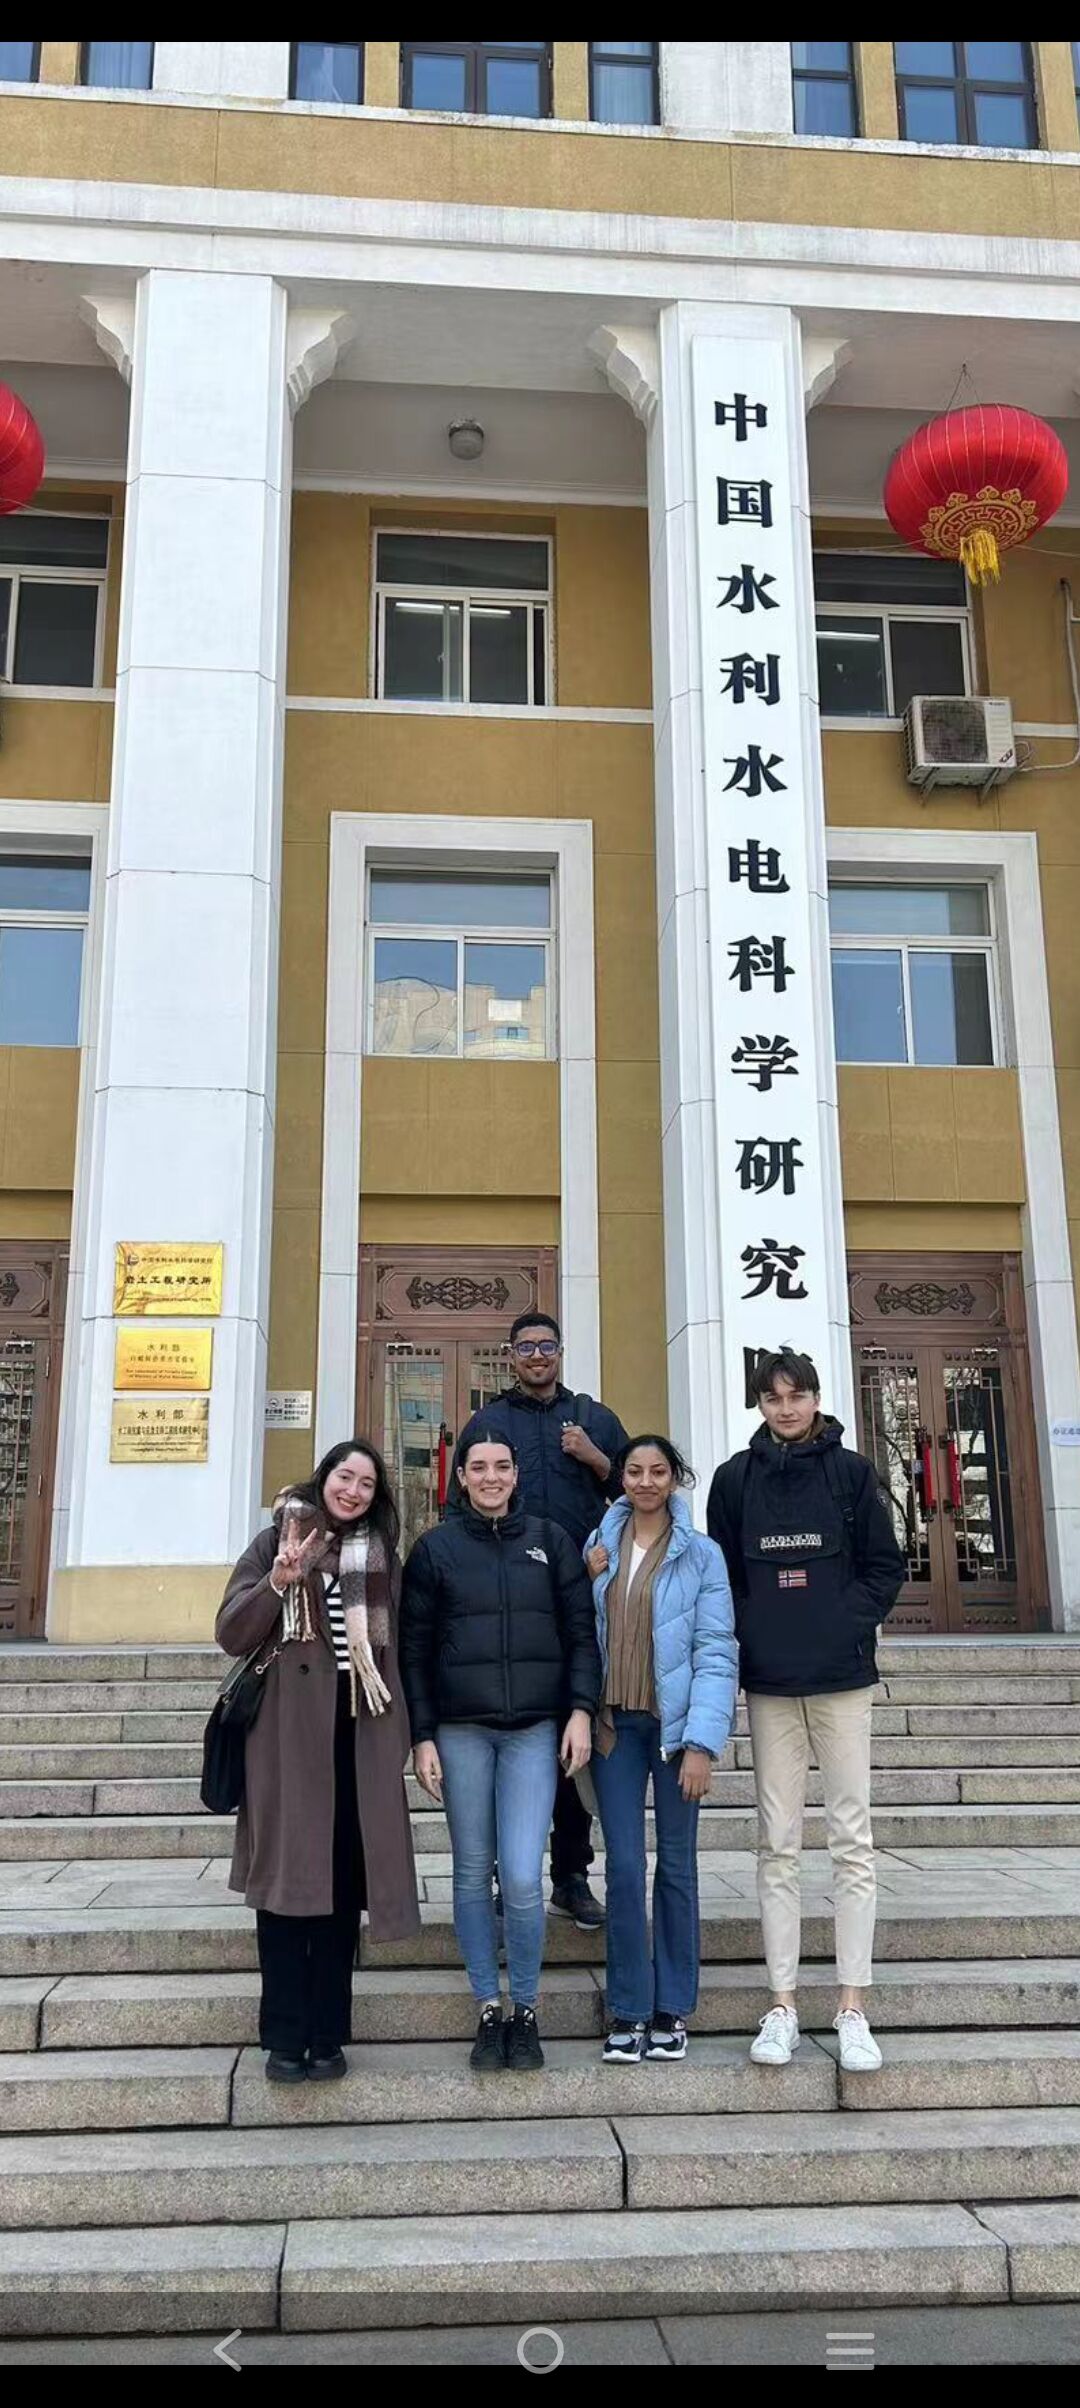 Etudiants du Master Hydroprotech à Pekin dans le cadre du 1er programme d'échange